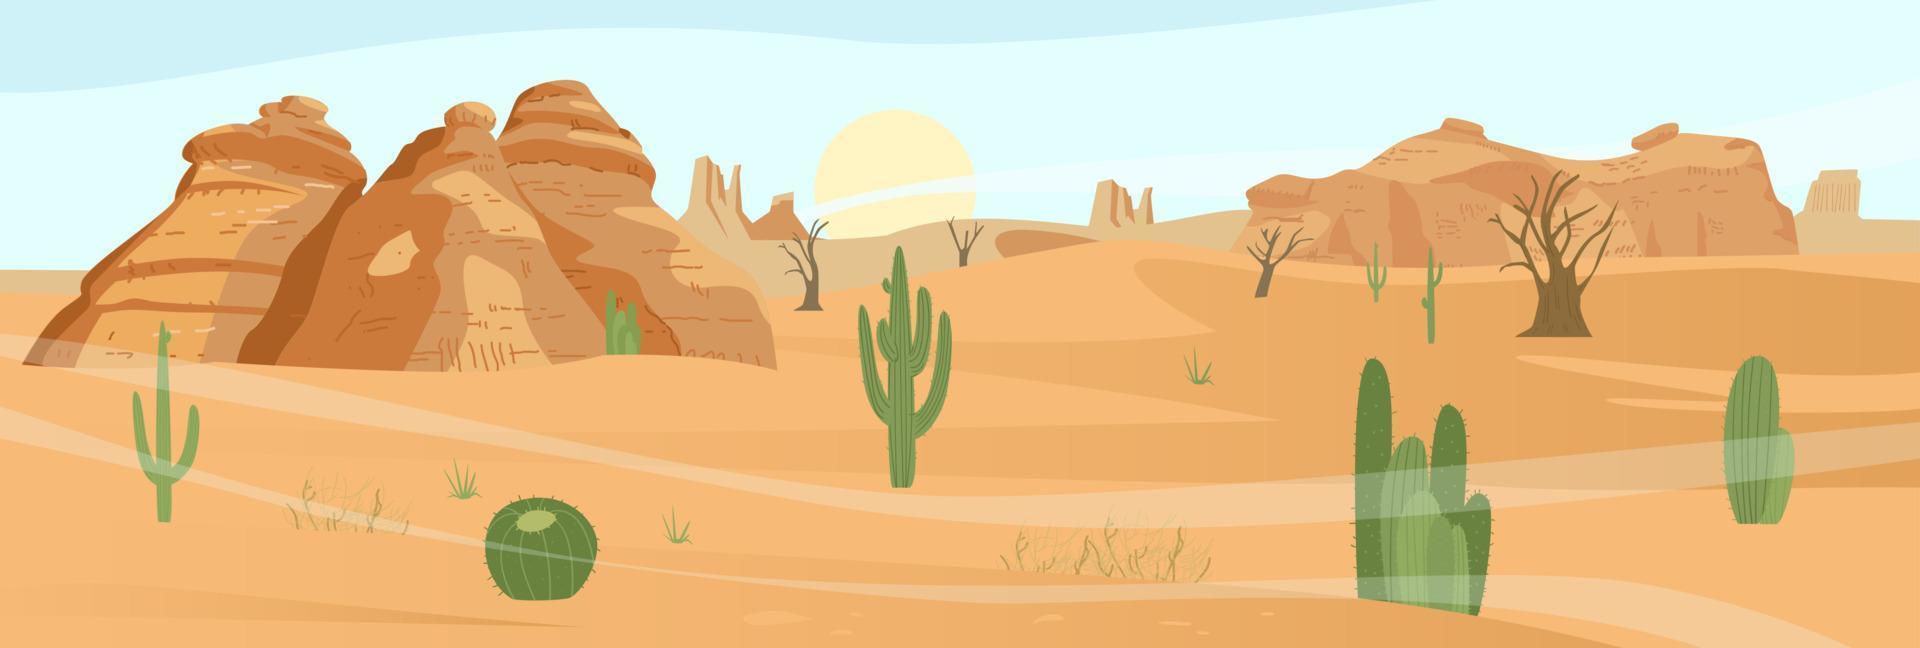 paisagem do deserto com rochas de cacto e areia. ilustração vetorial plana. vetor